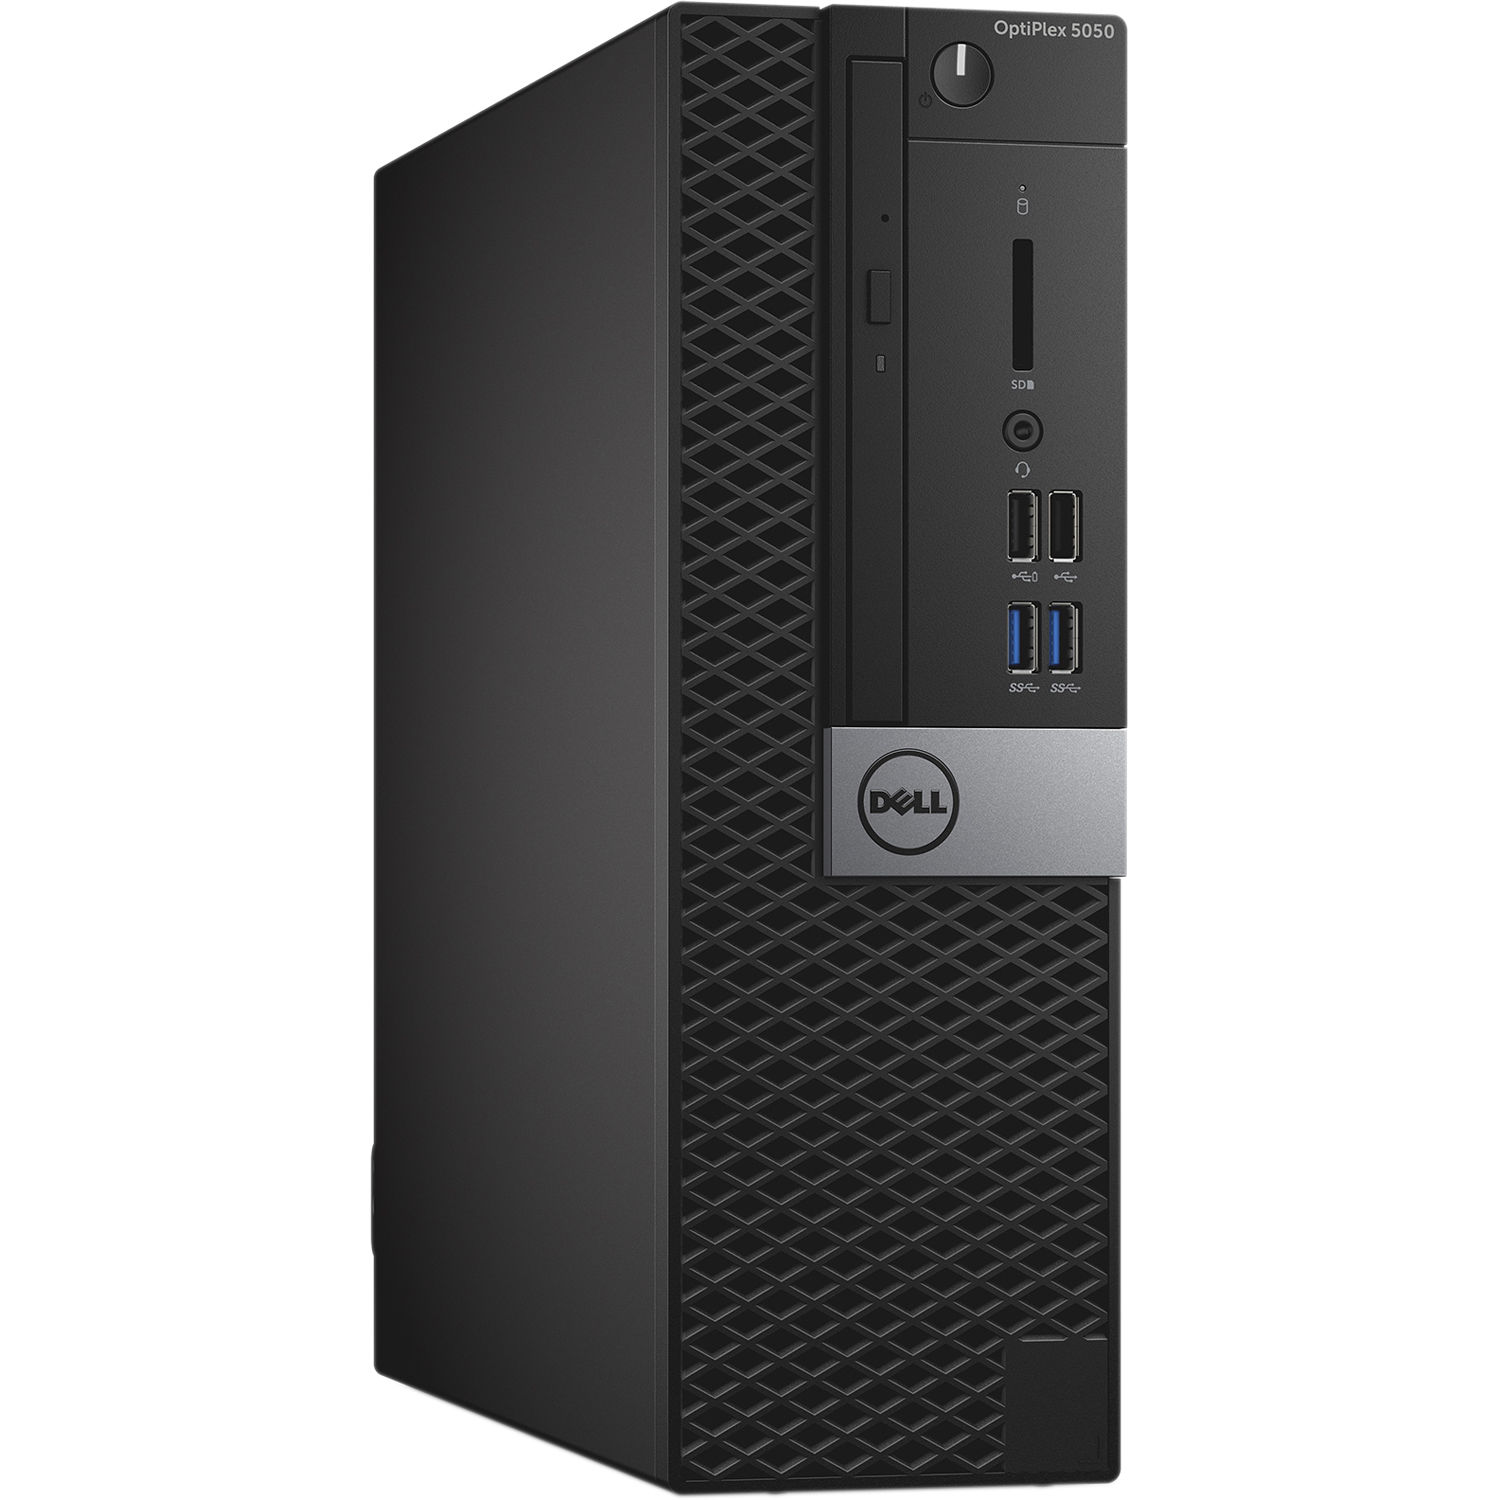 Dell Desktop Computer 5050 Grade A Intel Core i5 i5-7500 16 GB RAM 256 GB SSD Windows 10 Professional